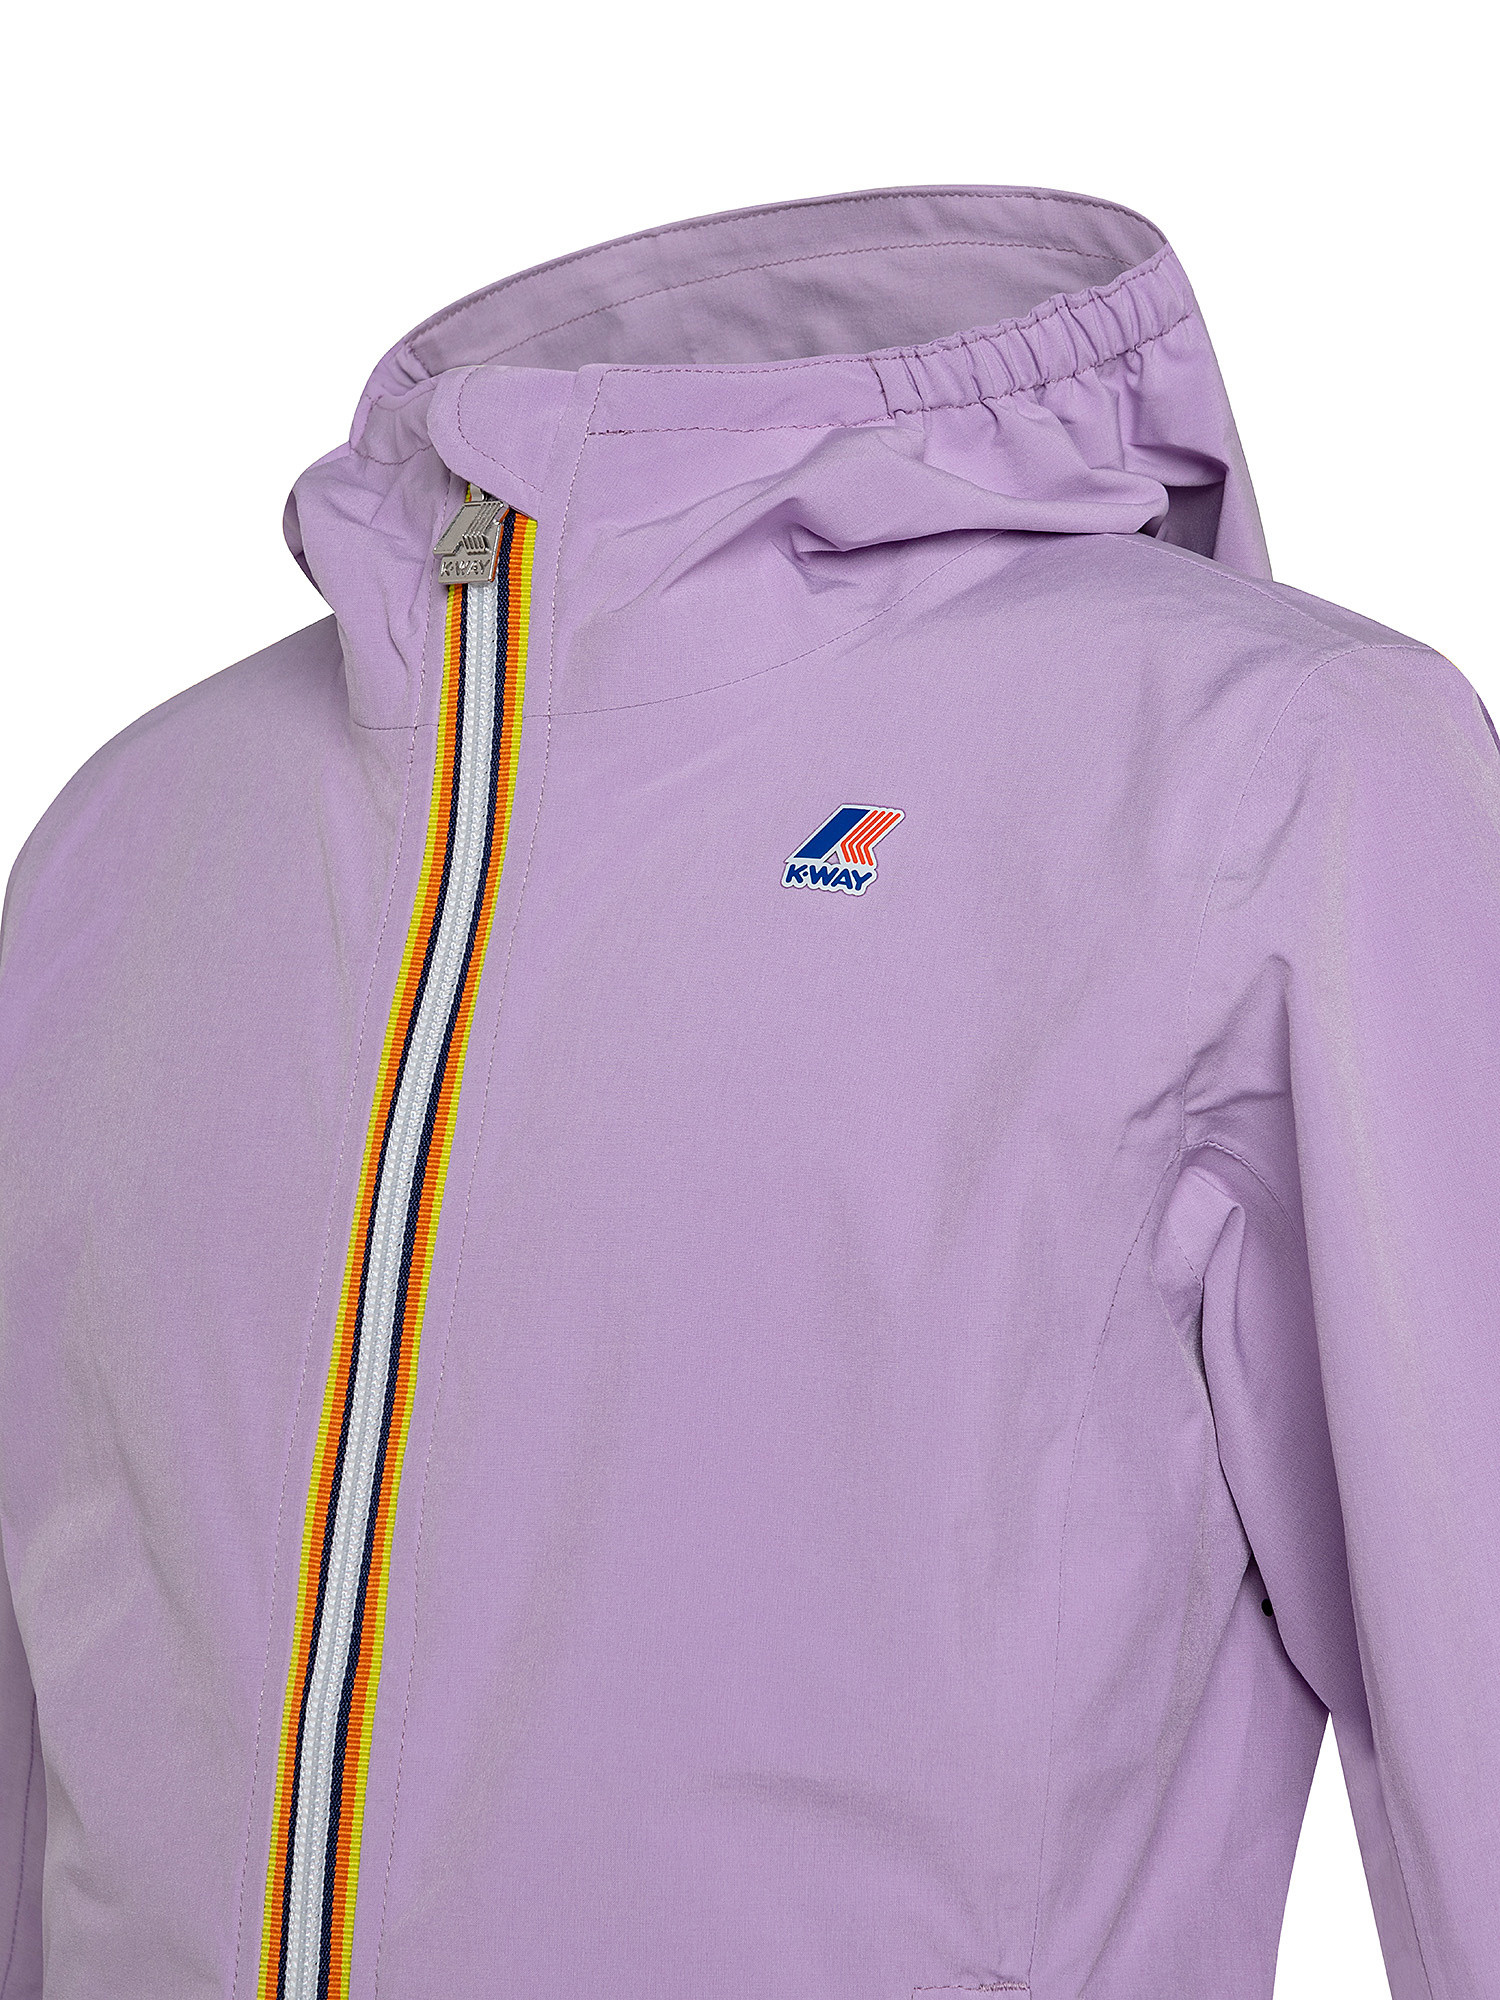 Waterproof boy jacket, Purple, large image number 2